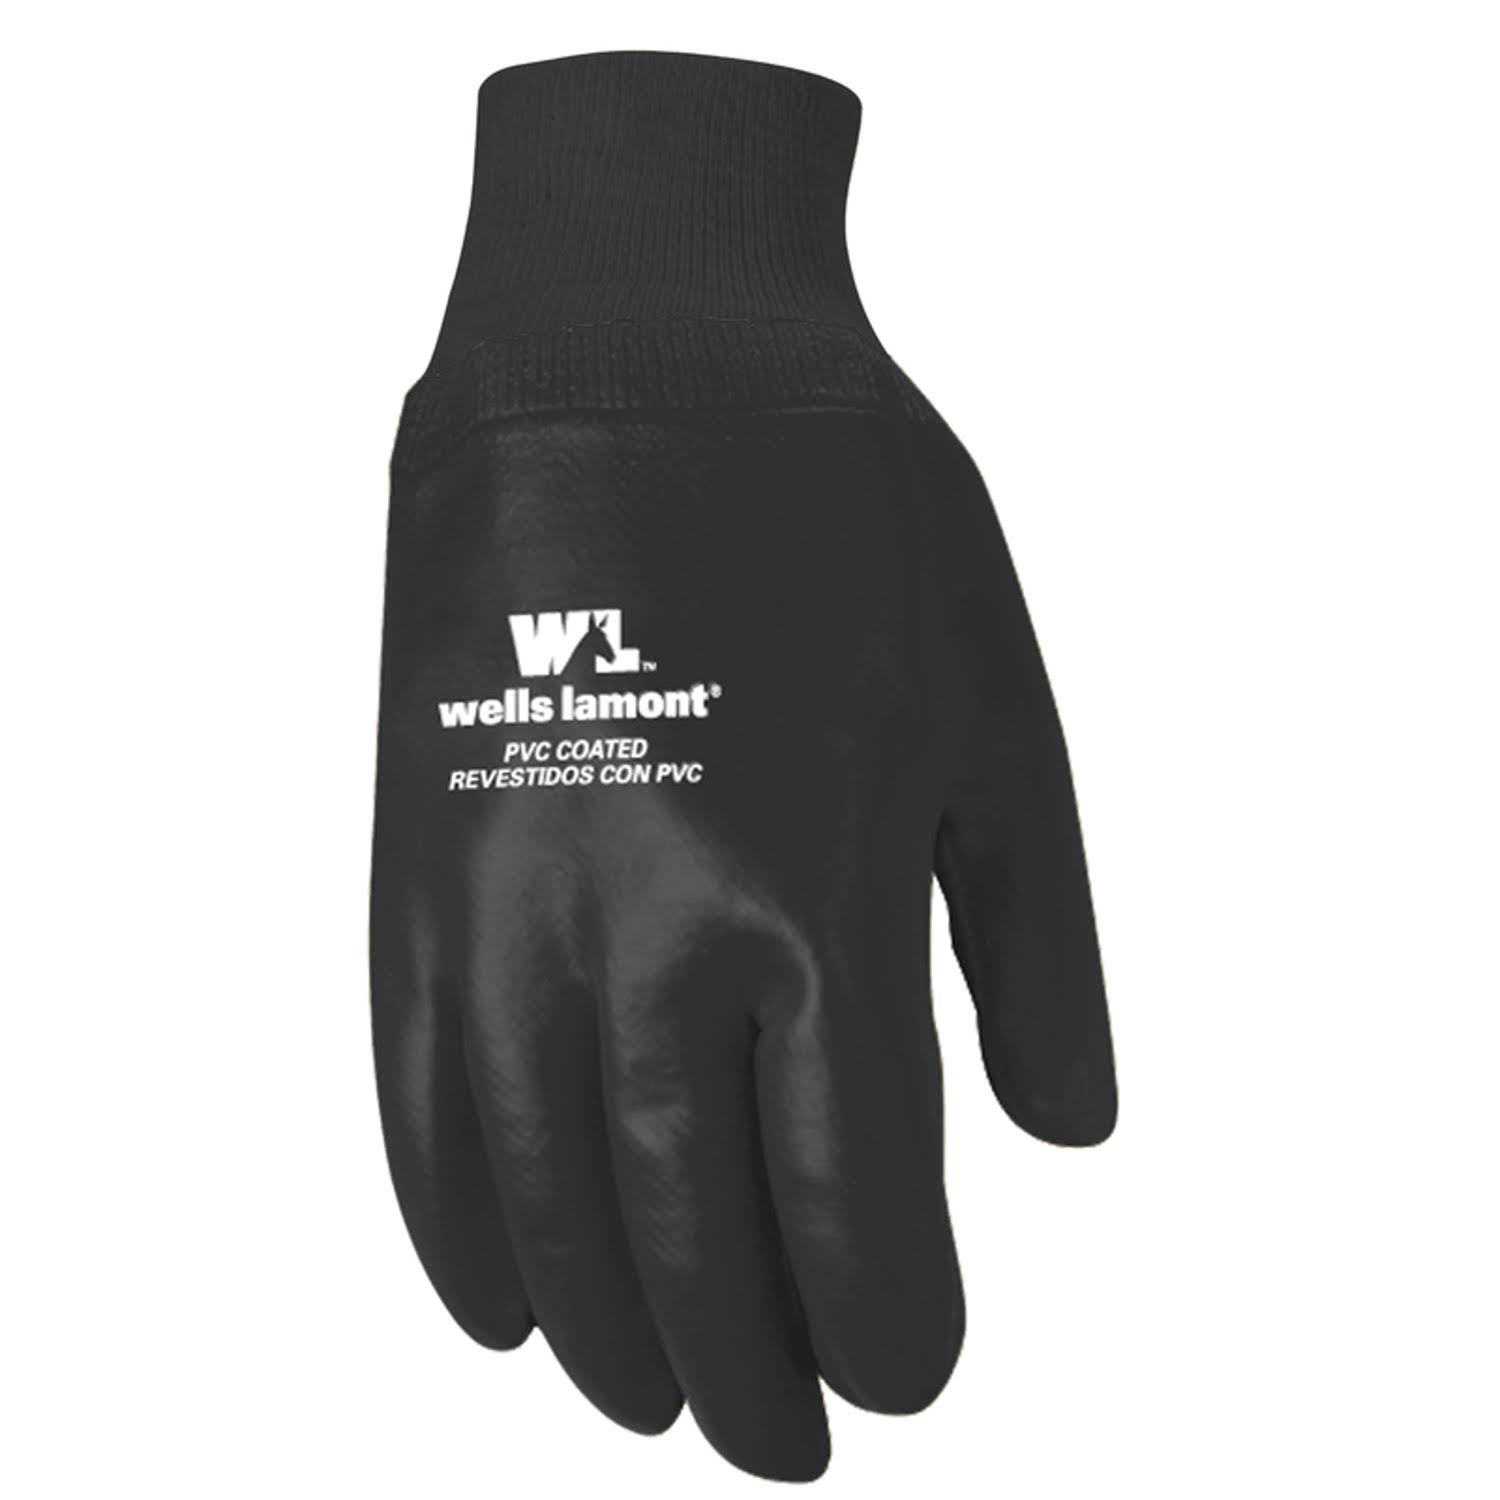 Wells Lamont Gloves, PVC Coated, Large